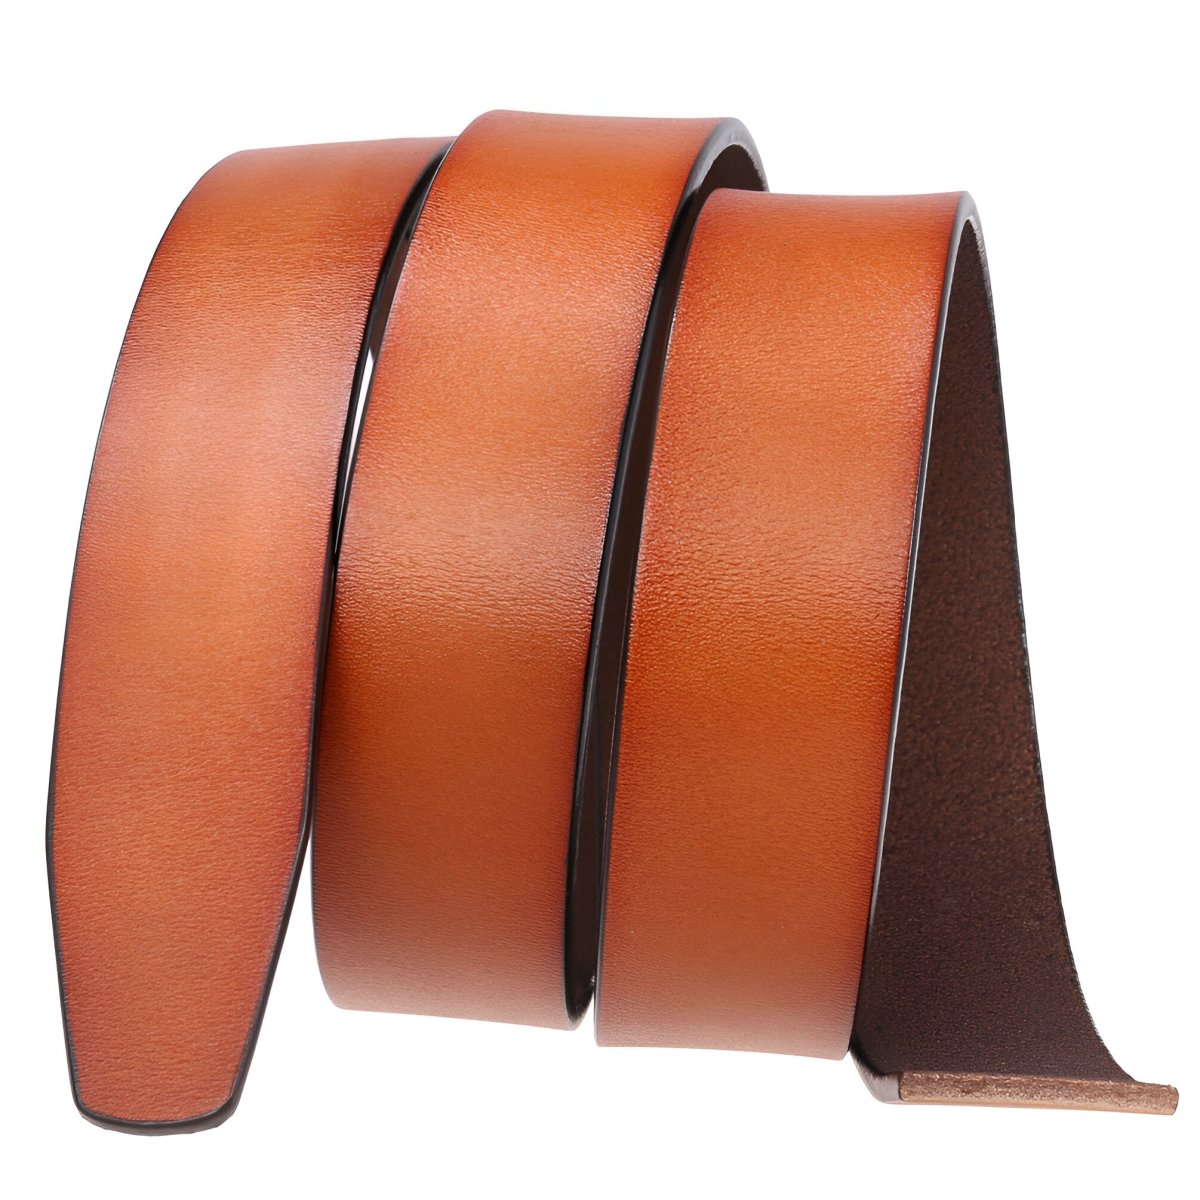 Lanière de ceinture 3.5 cm, en cuir, aspect rétro, pour boucles automatiques, modèle Achille - La Boutique de la Ceinture